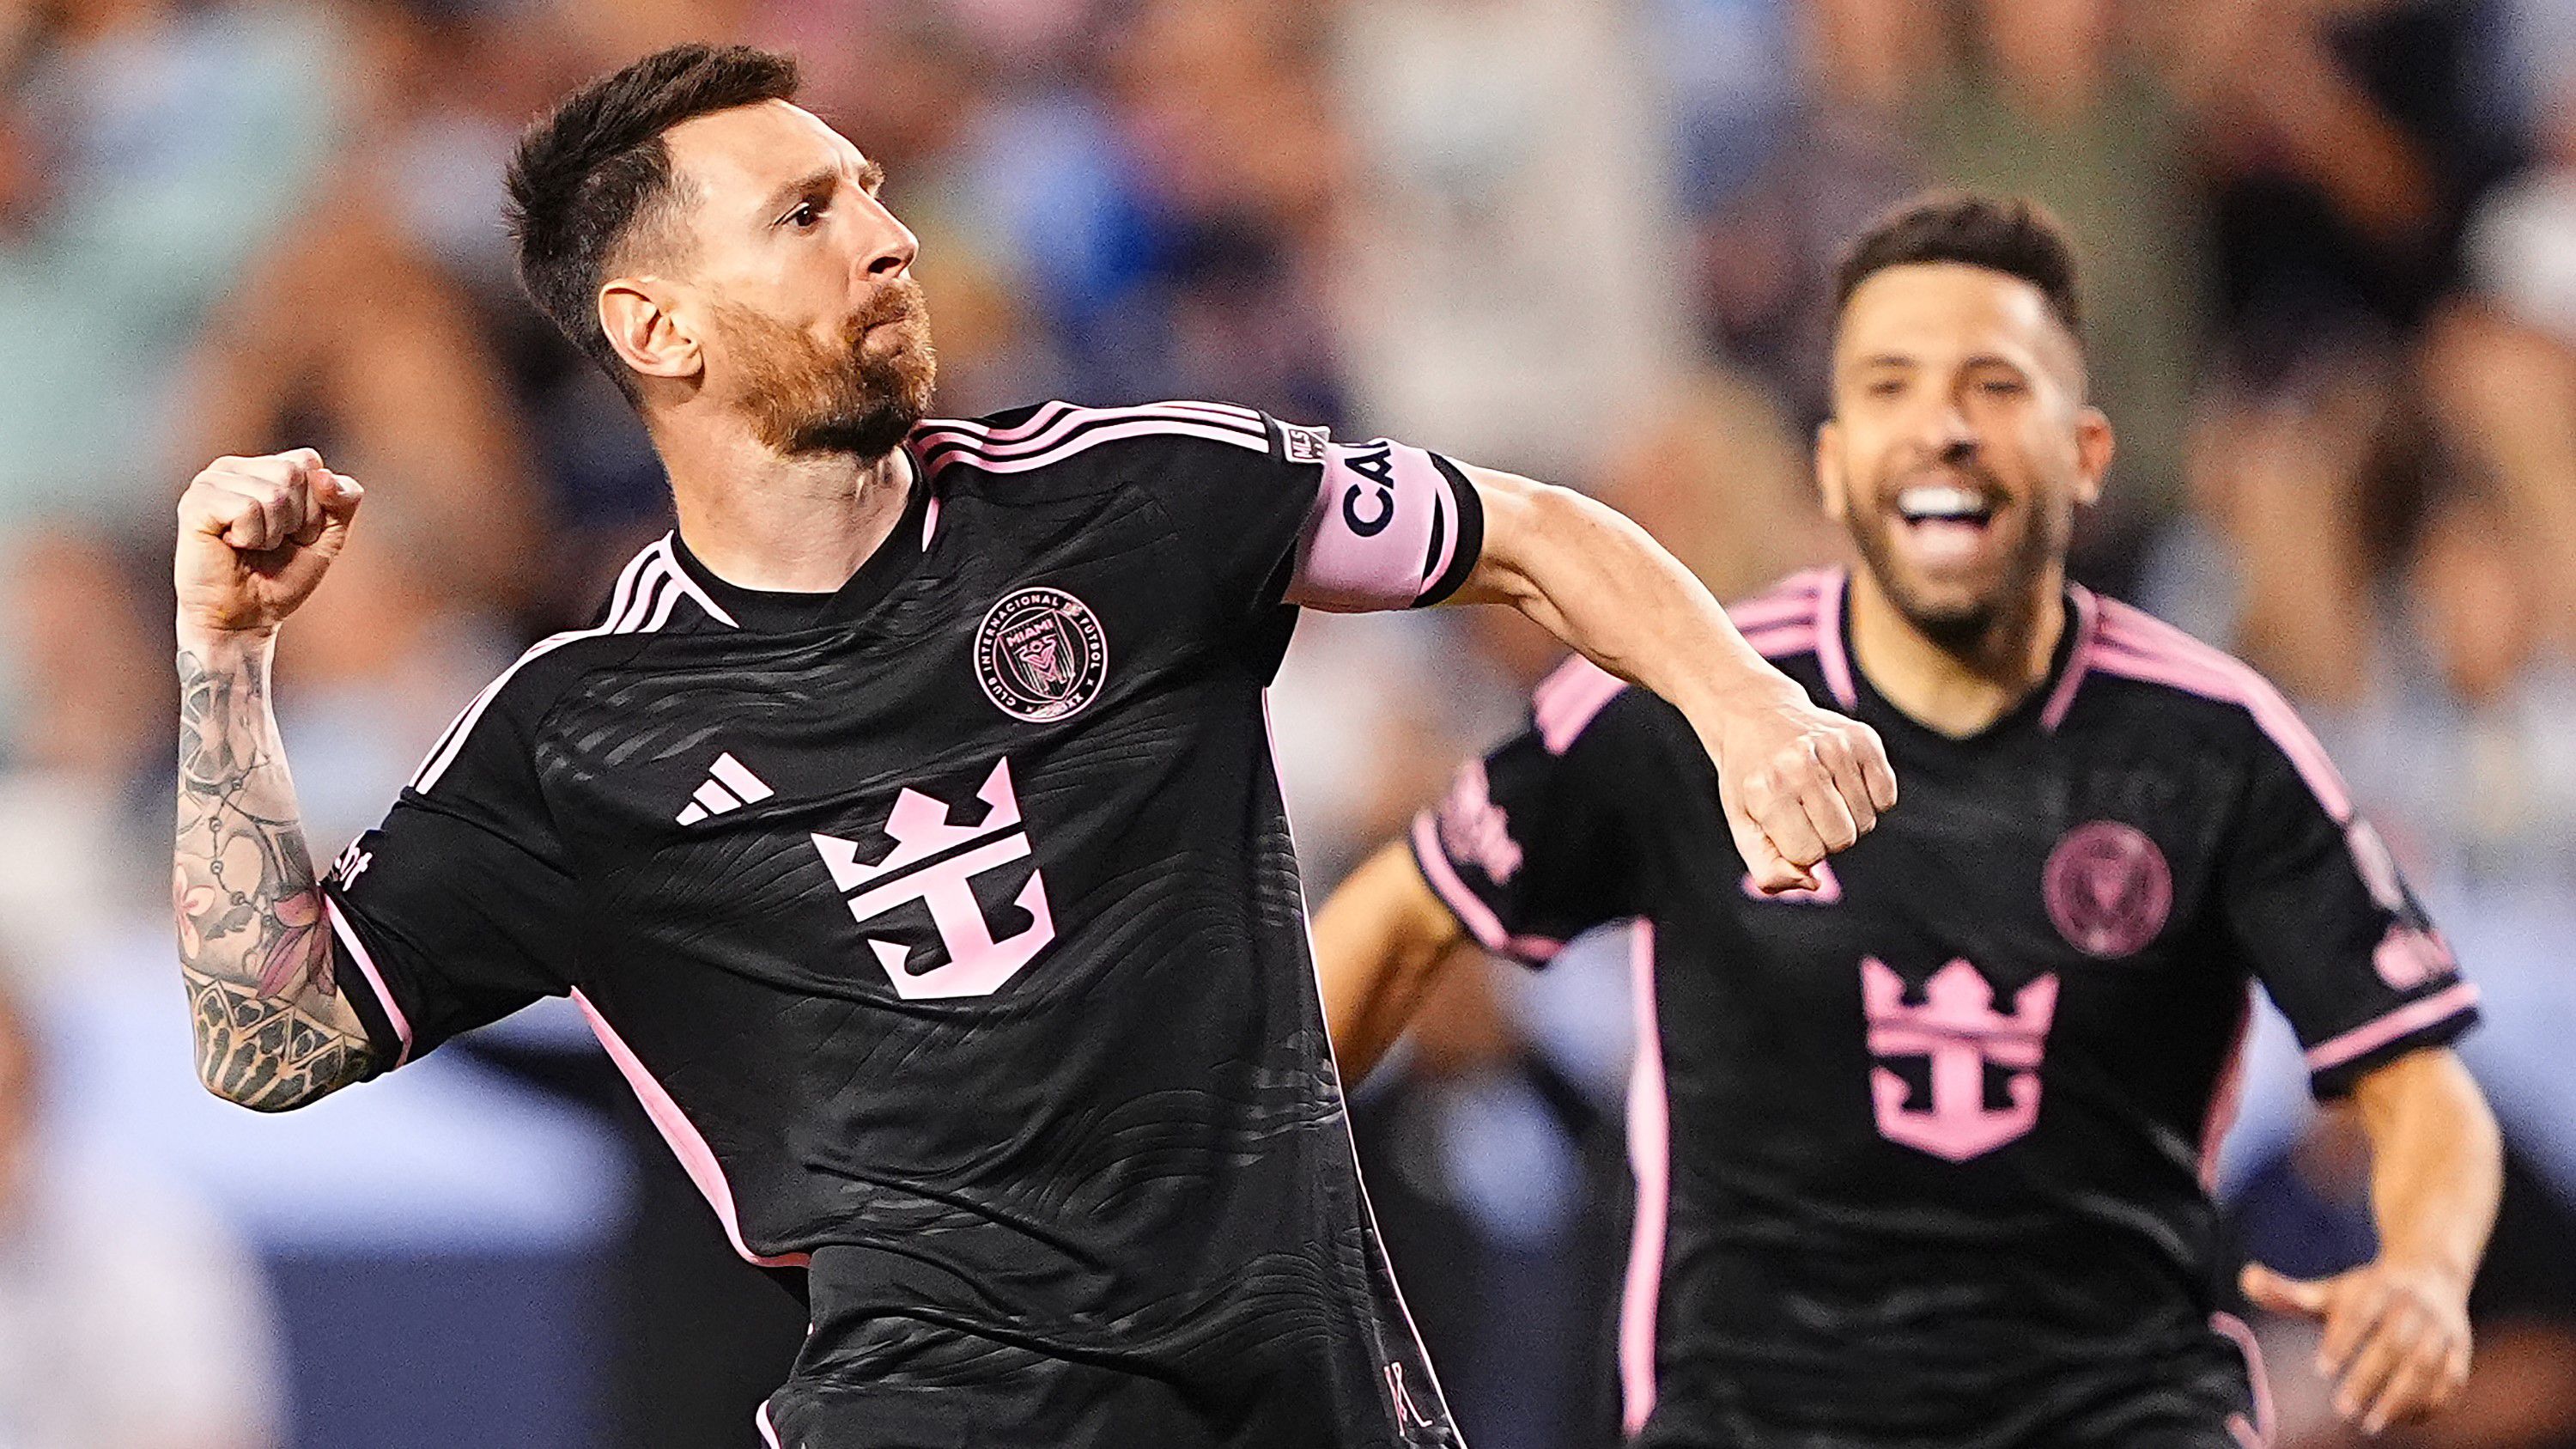 Messi óriási gólt lőtt Sallóiék ellen; Alonso szerződéshosszabbításáról beszélt a korábbi világbajnok – délelőtti hírösszefoglaló